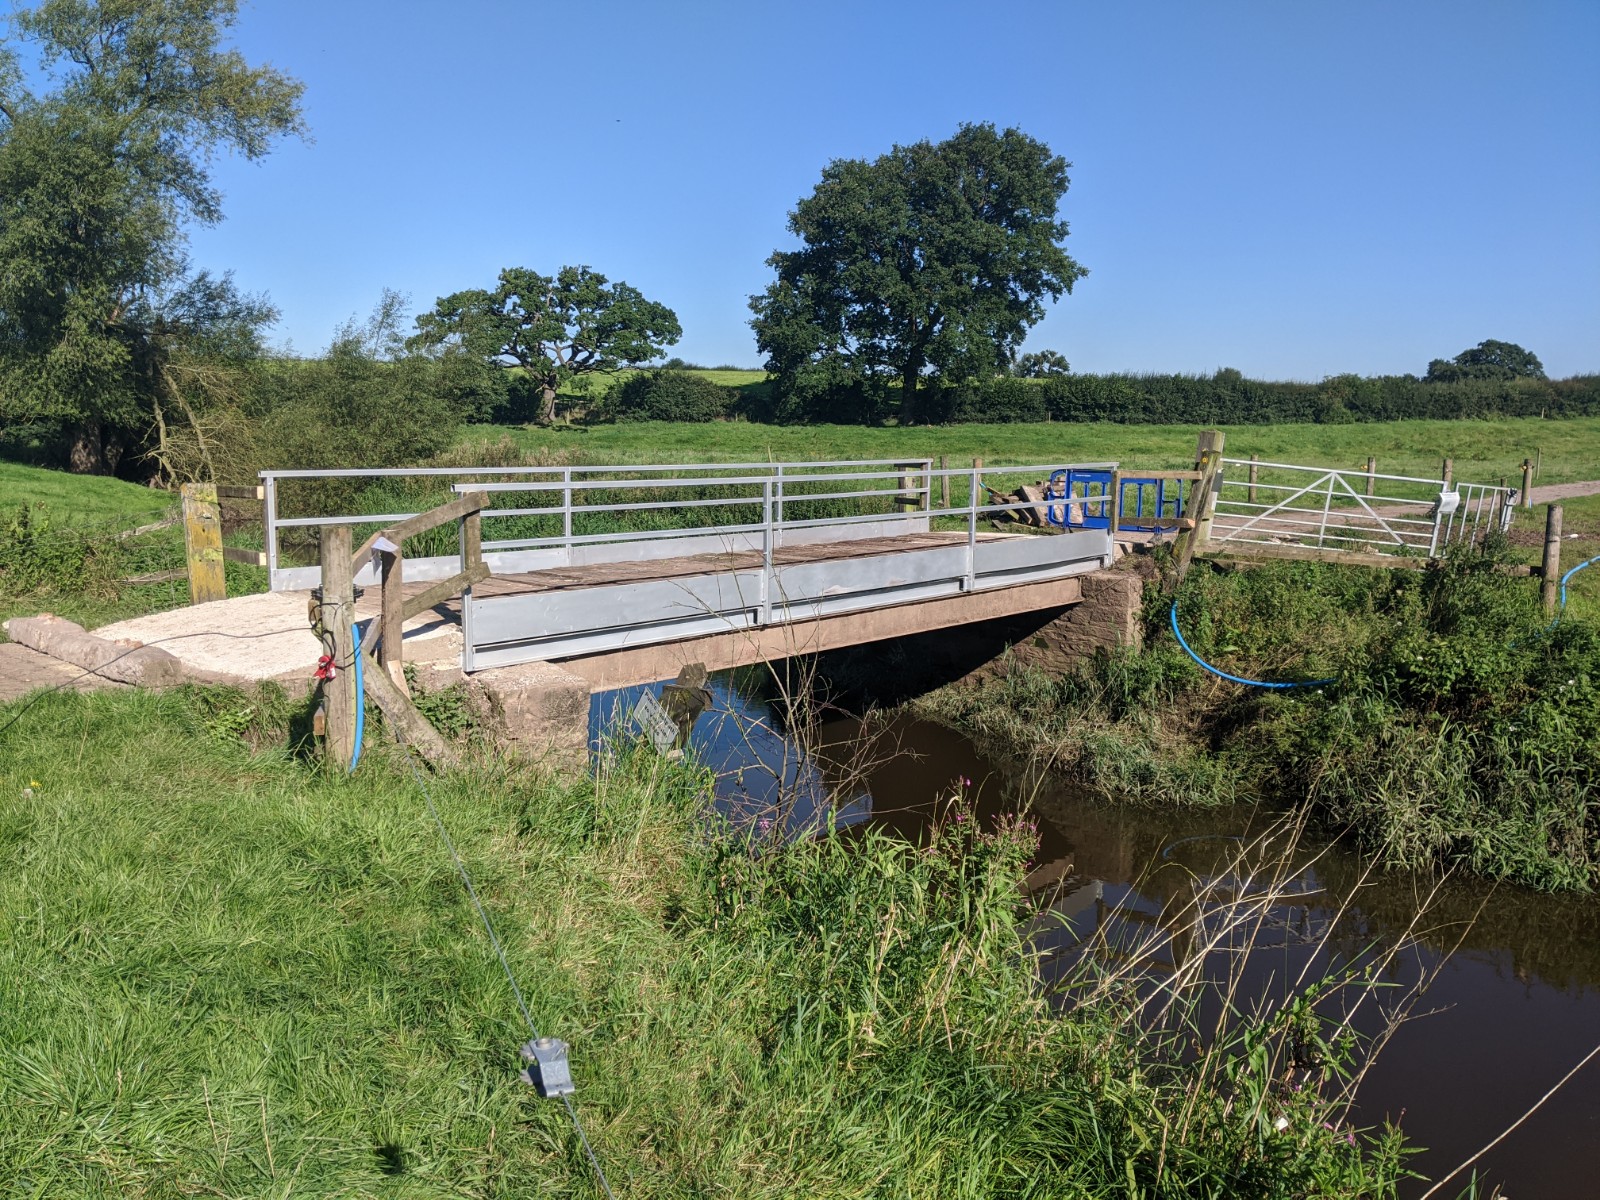 The repaired bridge over the Weaver, September 1st